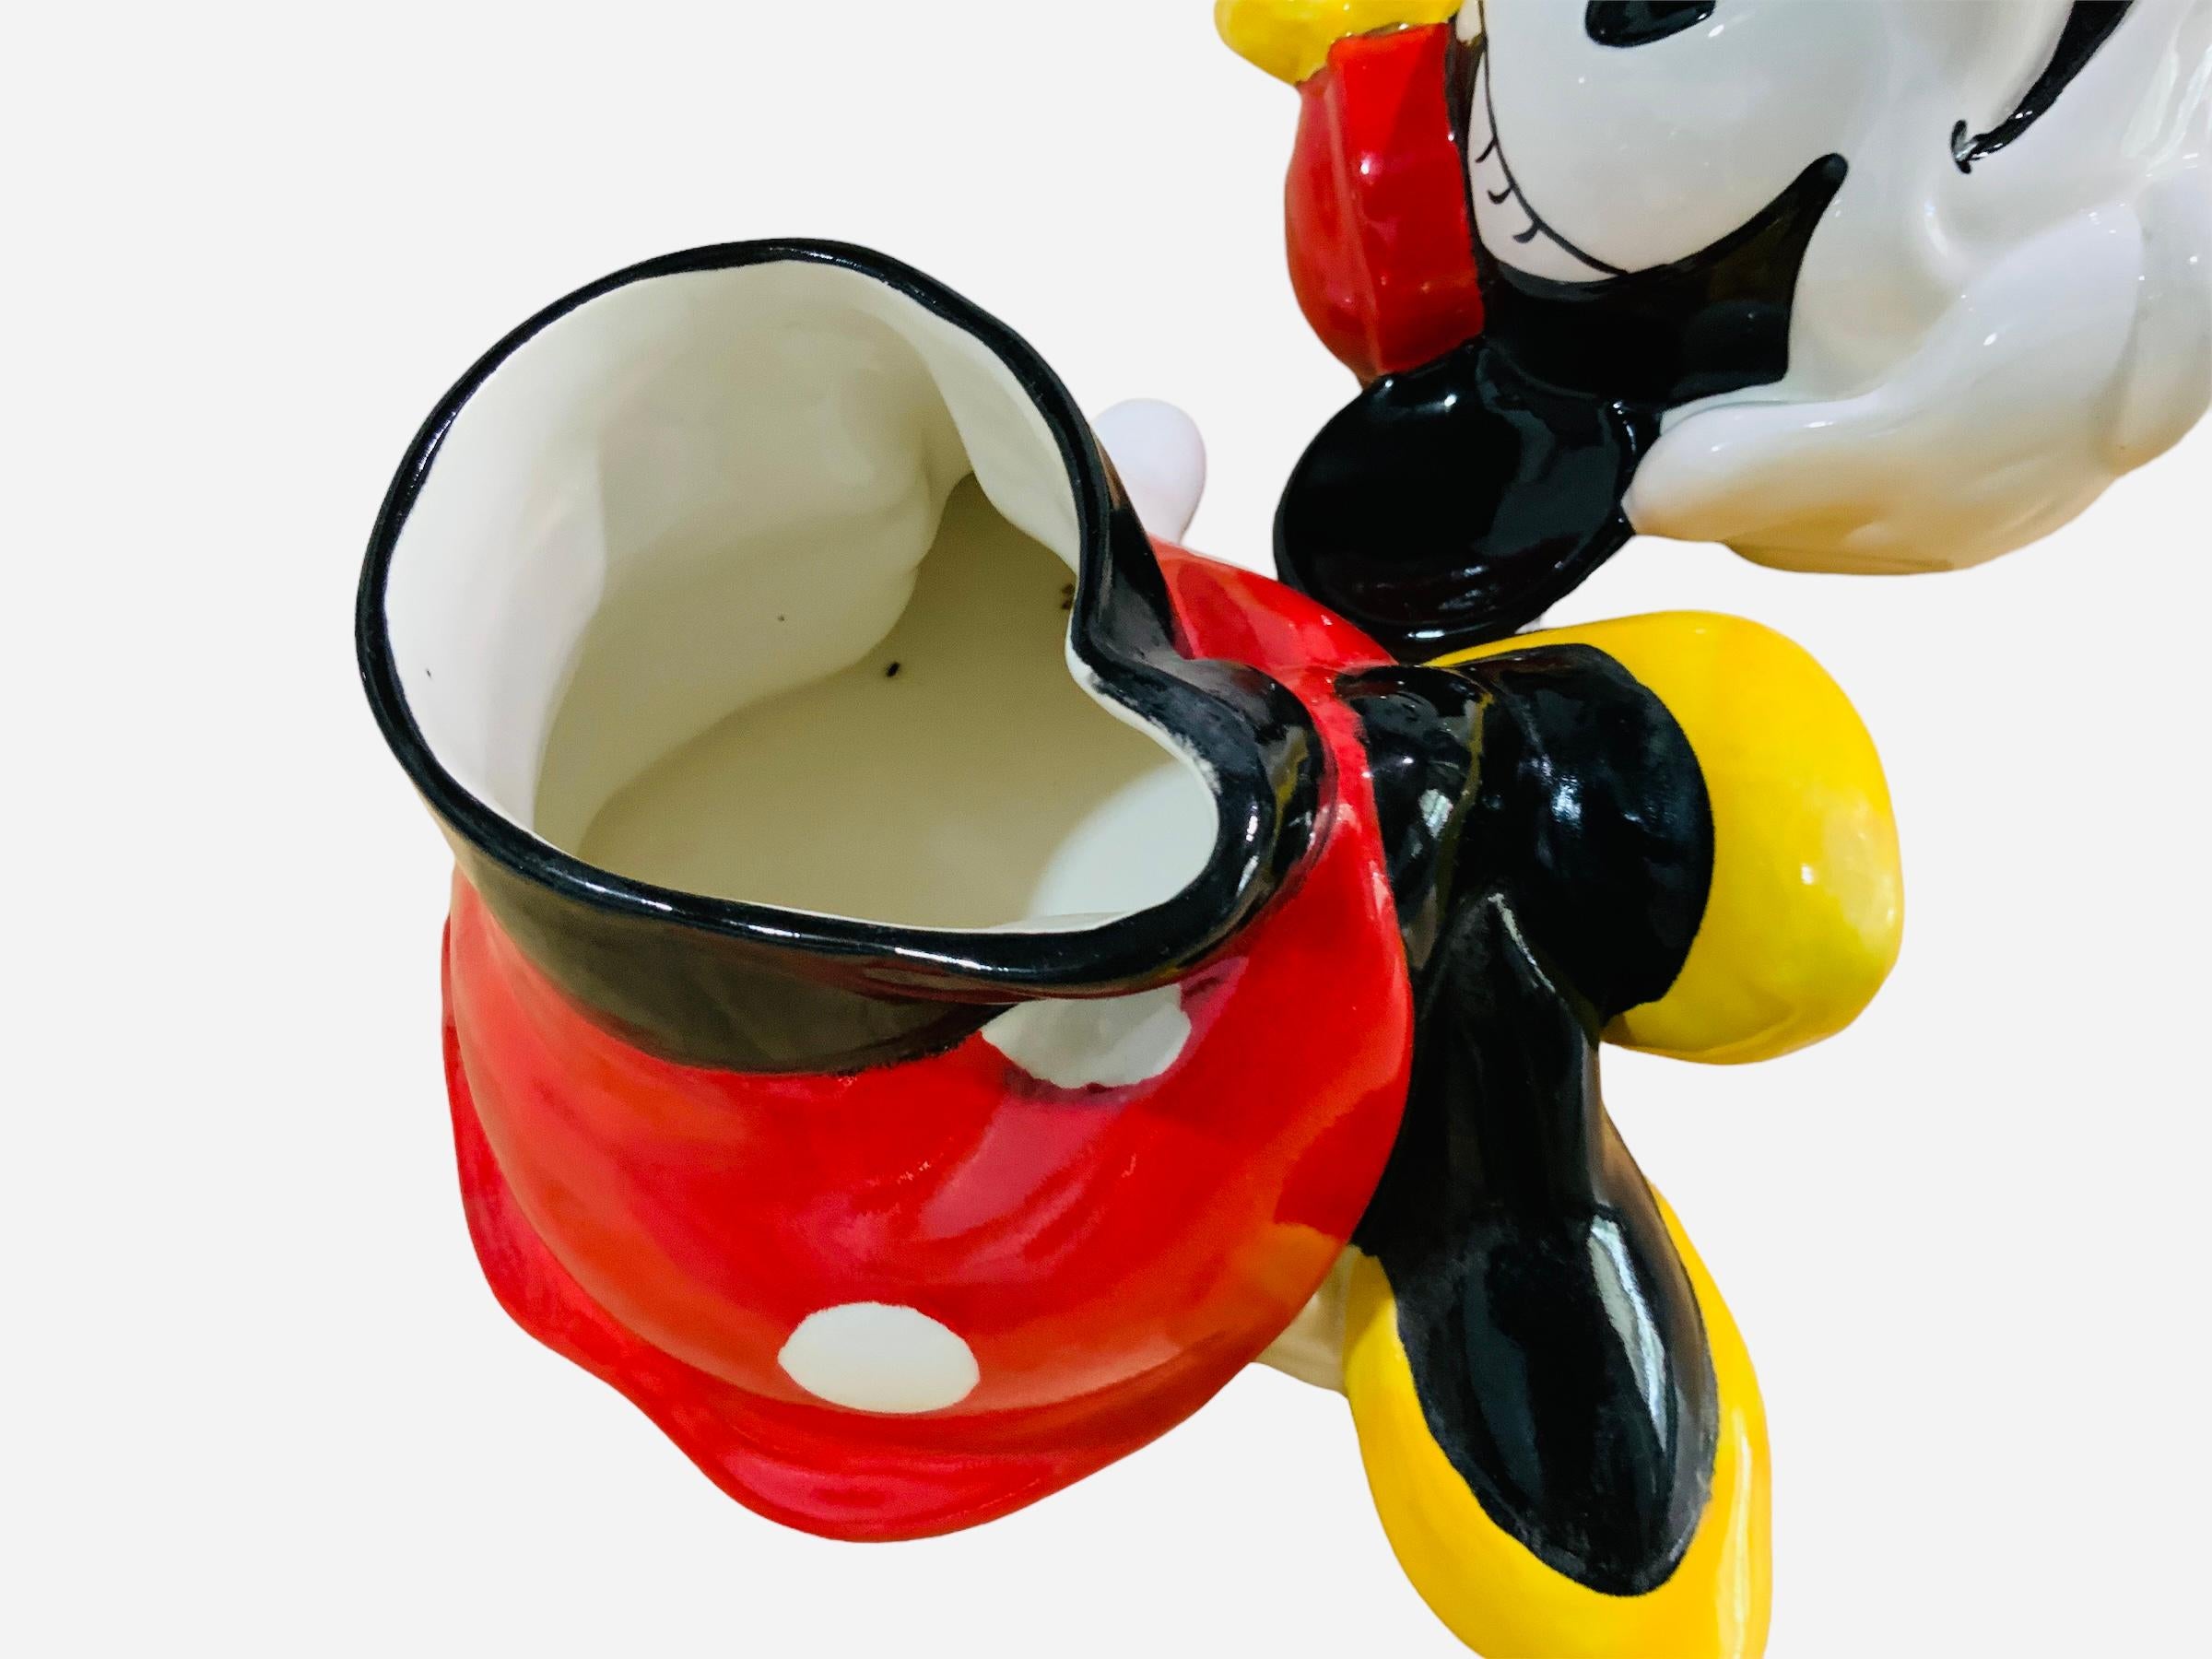 Dies ist ein Walt Disney, Minnie Mouse Cookie Jar. Es zeigt eine handbemalte, glasierte Keramik-Keksdose in Form einer koketten sitzenden Minnie Mouse. Unterhalb des Sockels ist Mexiko gestempelt. Der Rand des Kopfdeckels ist mit C, Disney